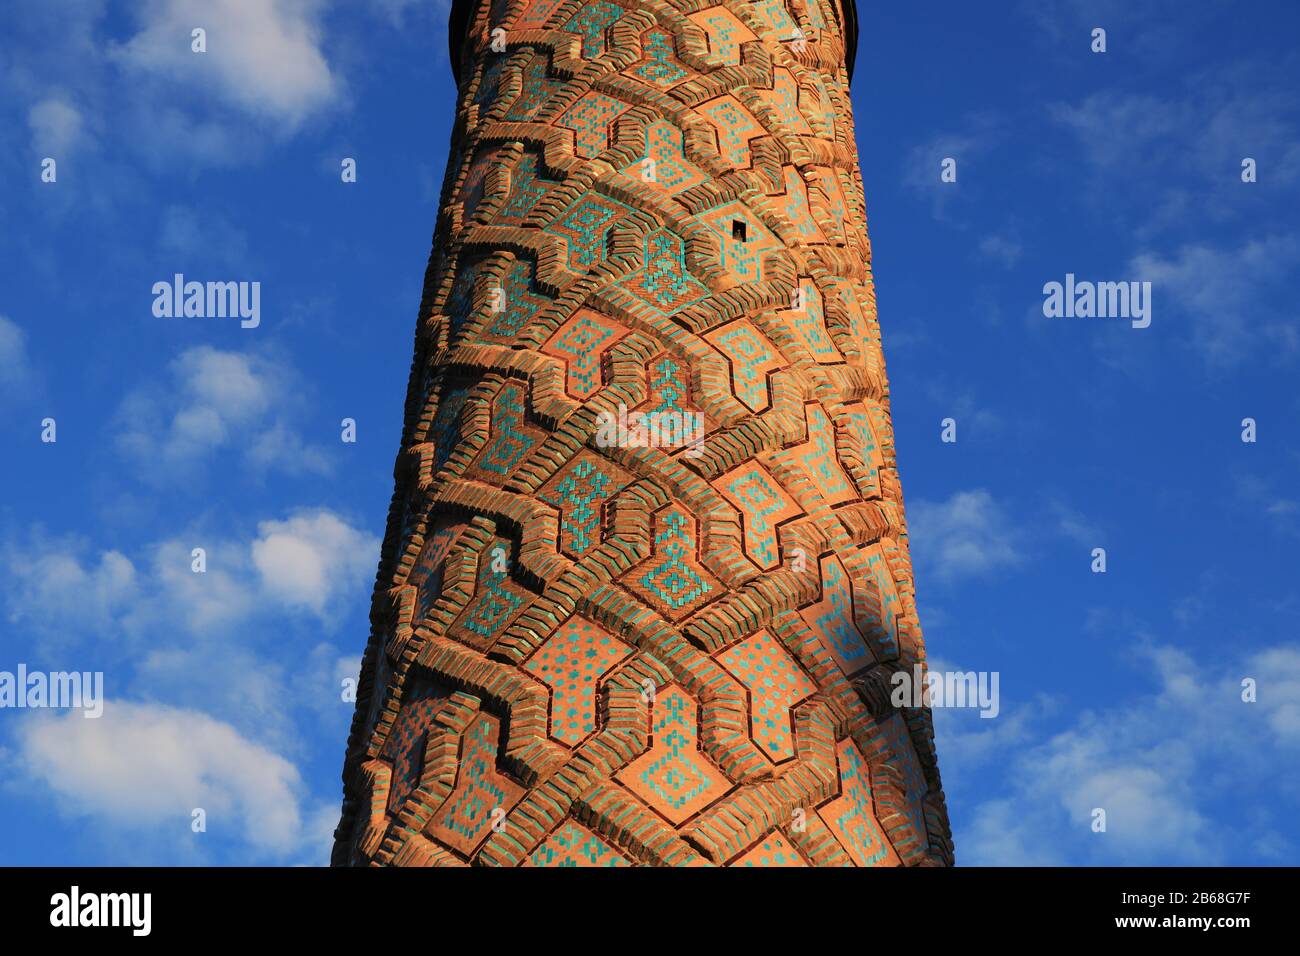 Minarett der Yakutiye Madrasah in Erzurum, Türkei. Es wurde im 19. Jahrhundert erbaut. Das Minarett weist geometrische Verzierungen auf. Stockfoto